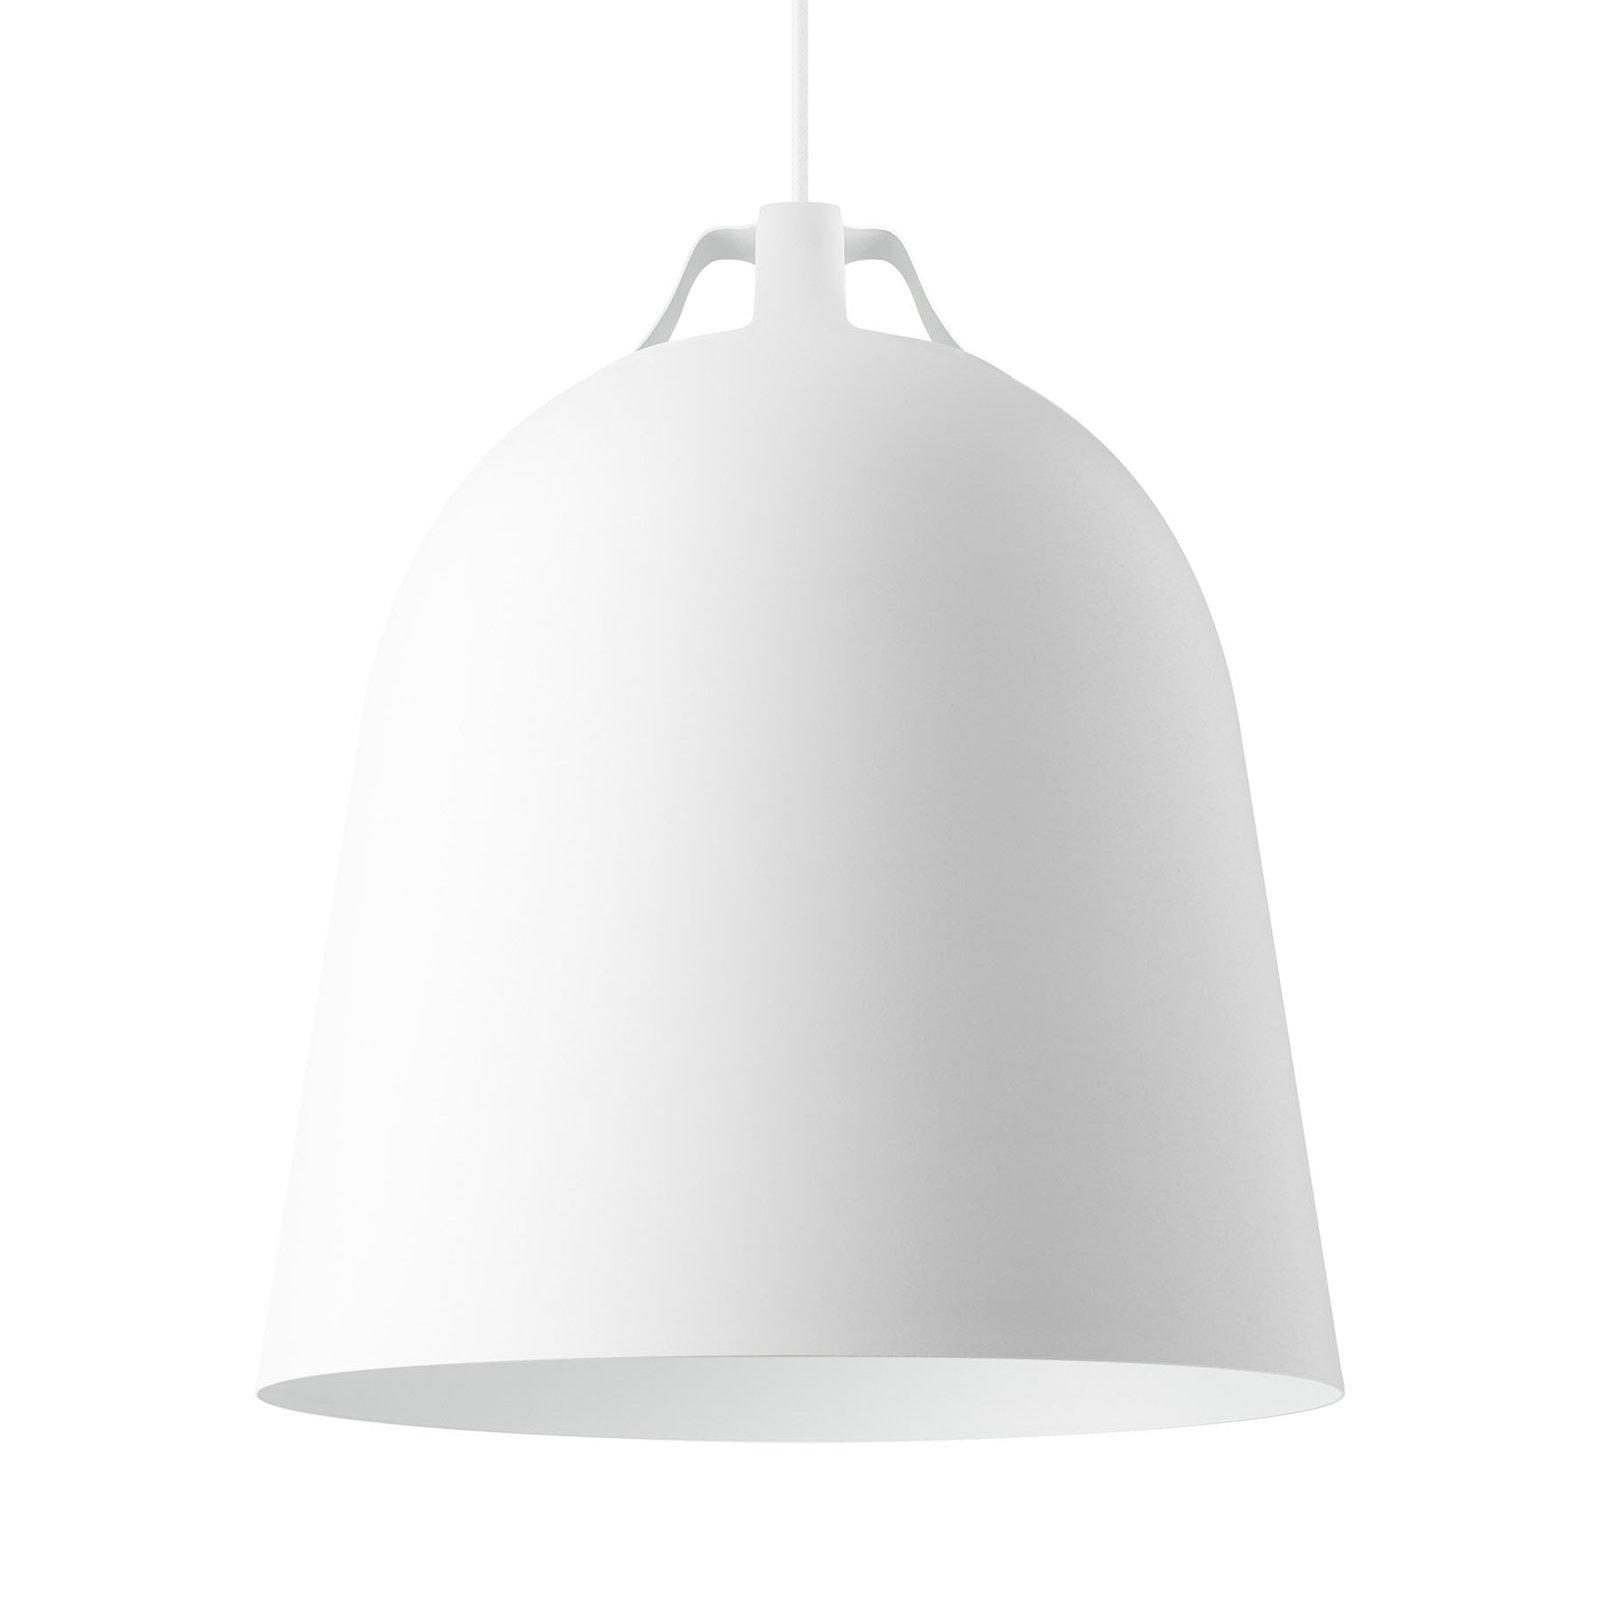 EVA Solo Clover lampa wisząca Ø 35cm, biała